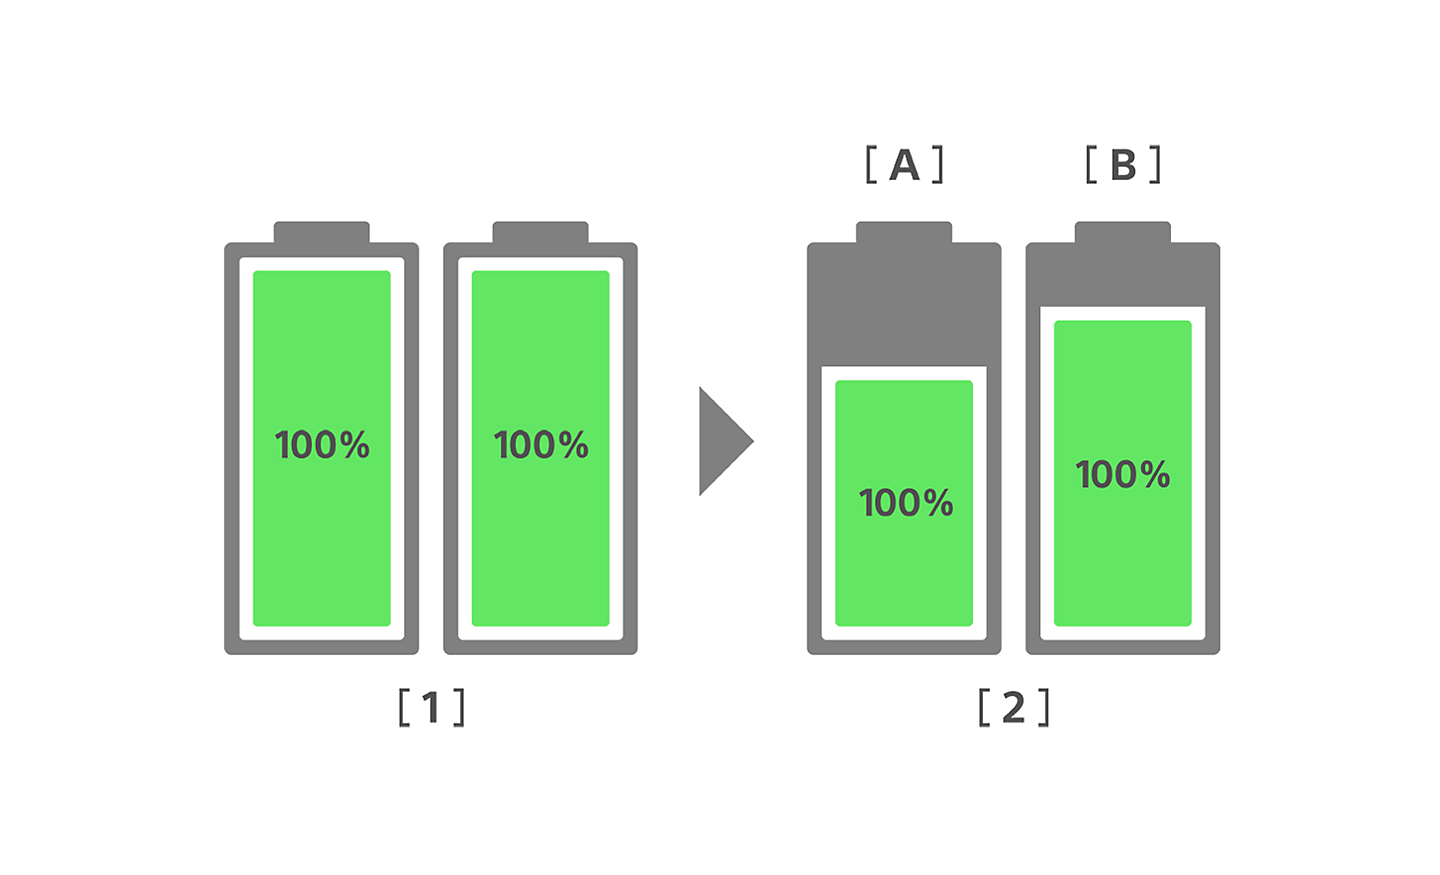 Ilustrácia porovnávajúca stav batérie bežného smartfónu a nového smartfónu Xperia na začiatku a po 3 rokoch používania